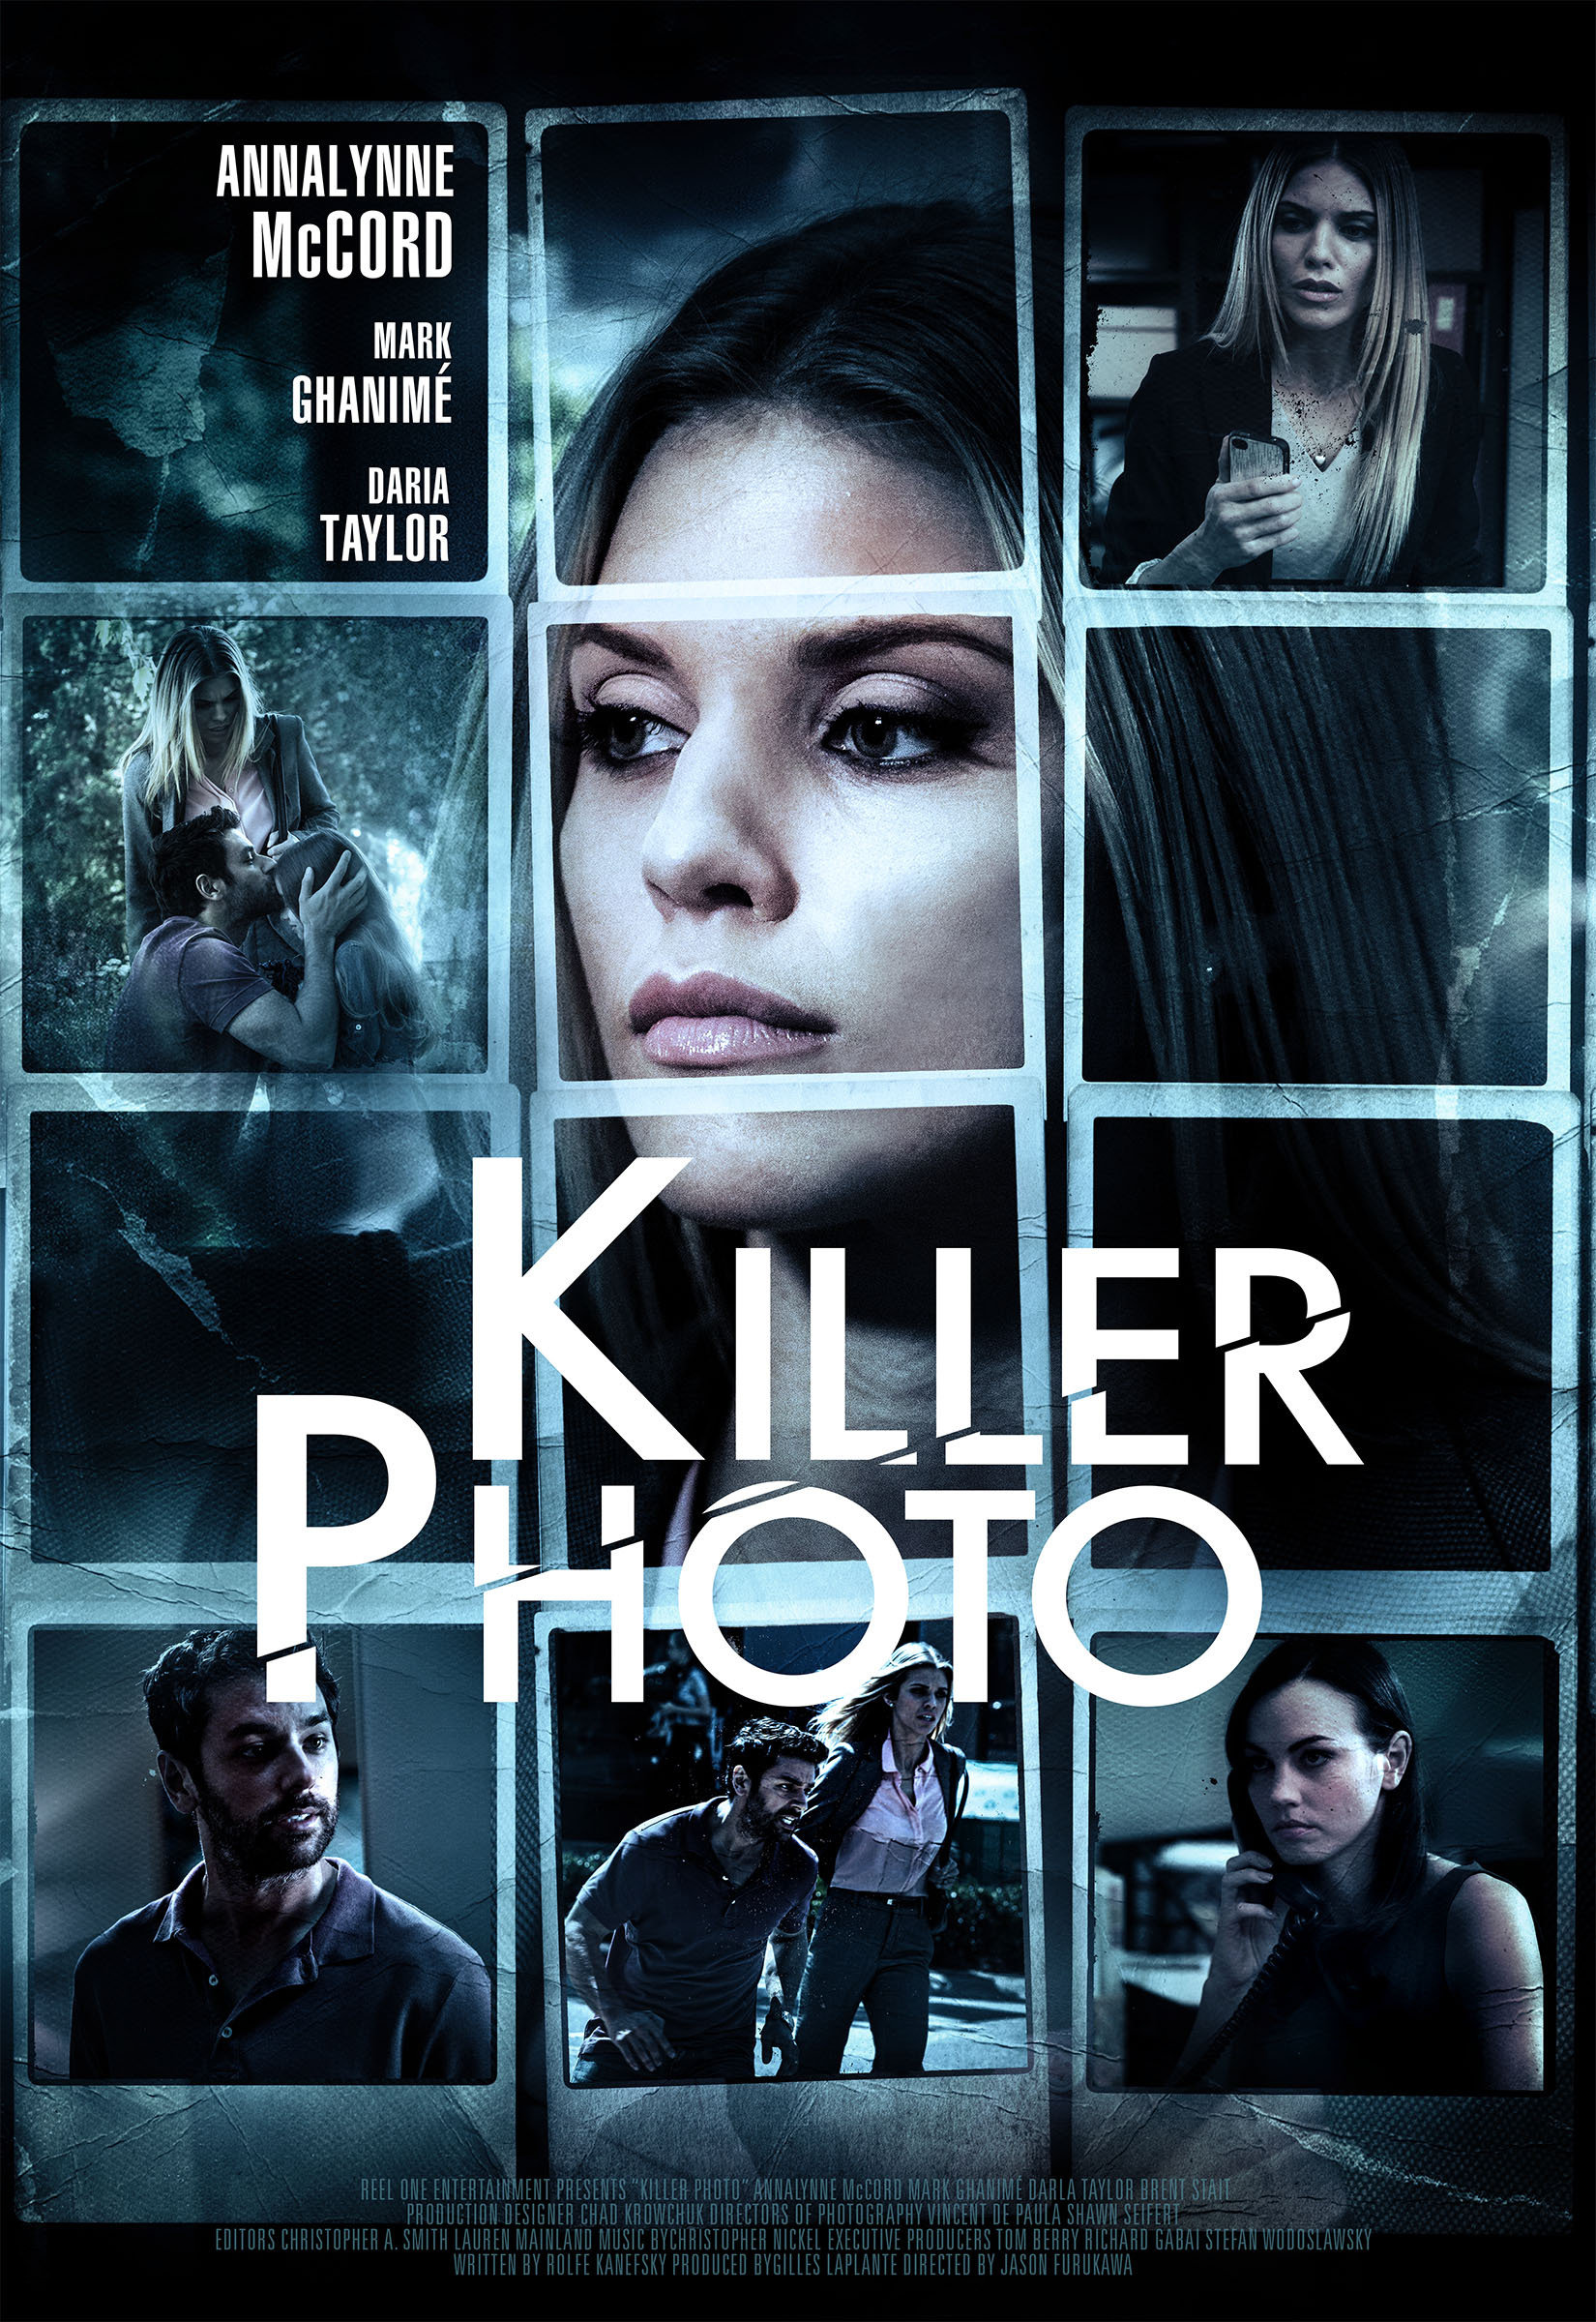 Darla Taylor in Killer Photo (2015)